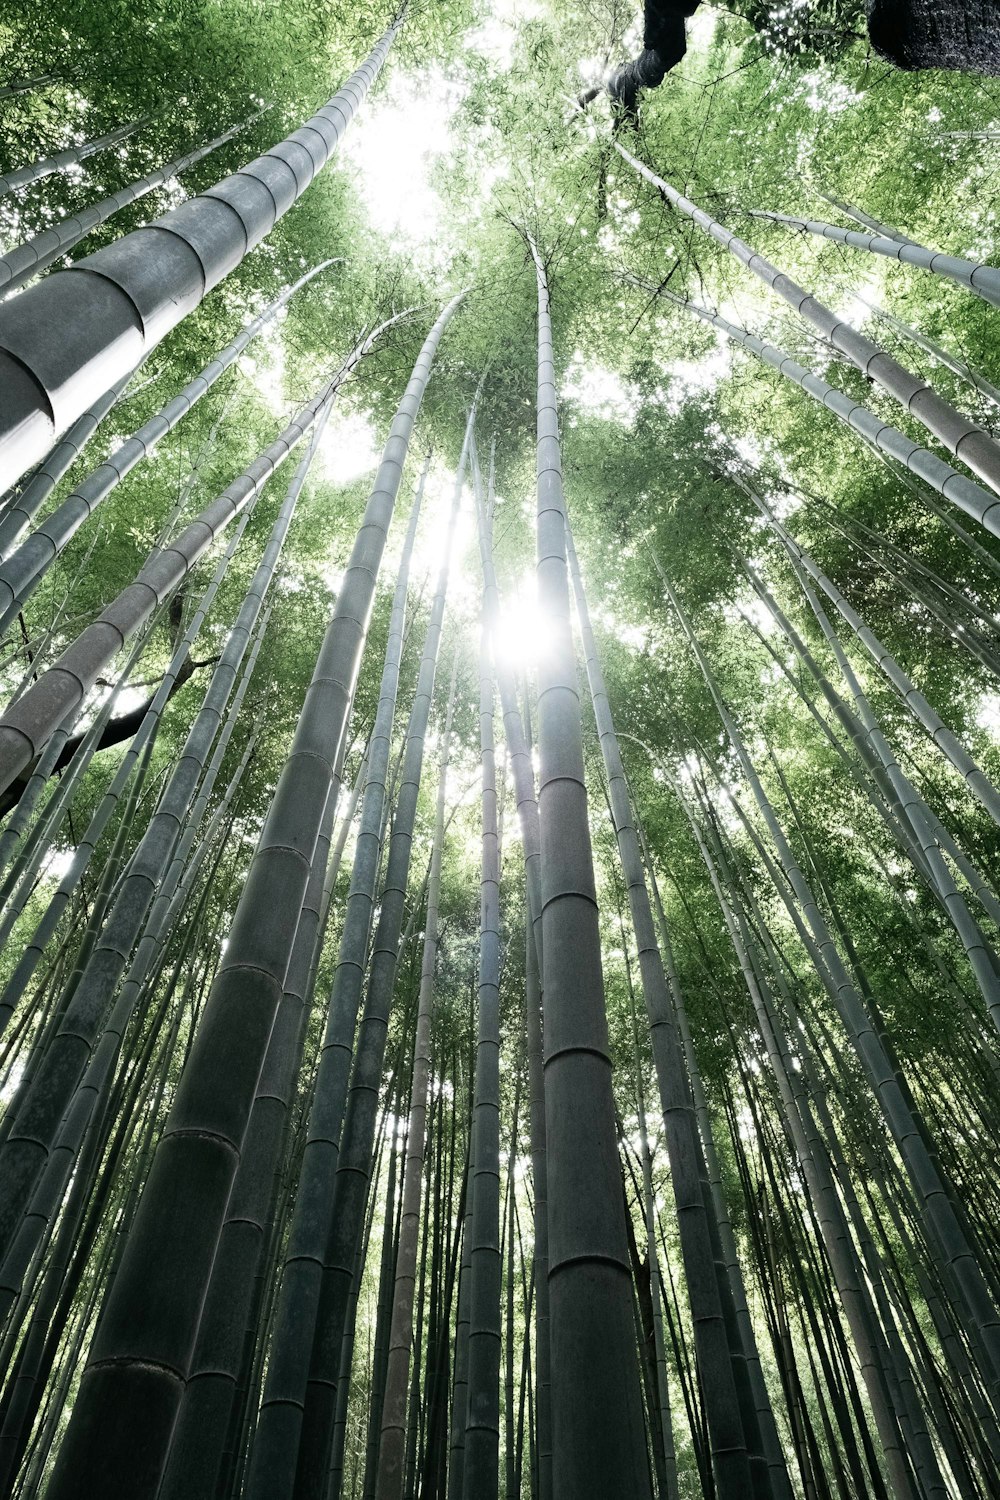 Photographie en contre-plongée de bambous verts